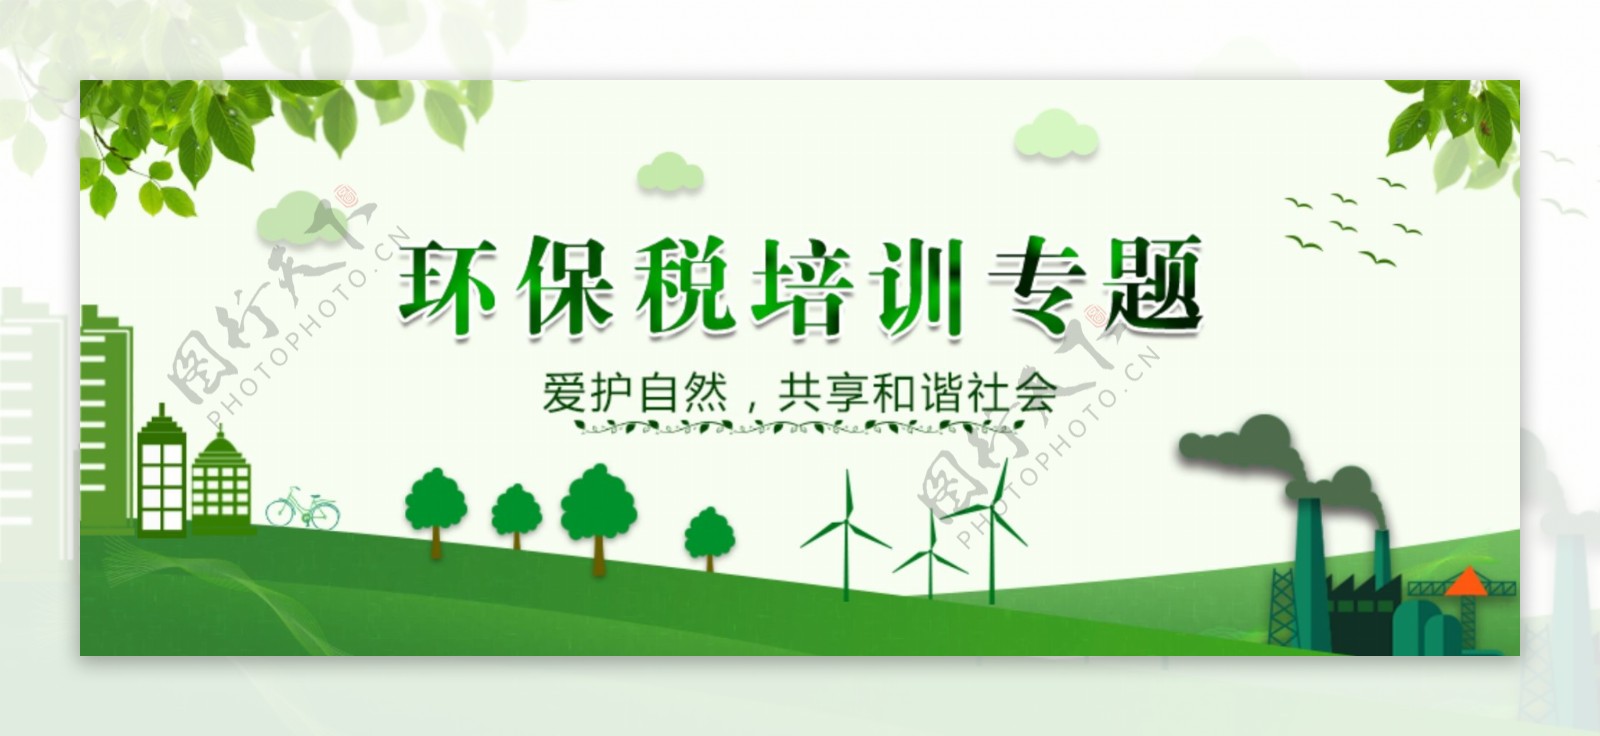 环保banner